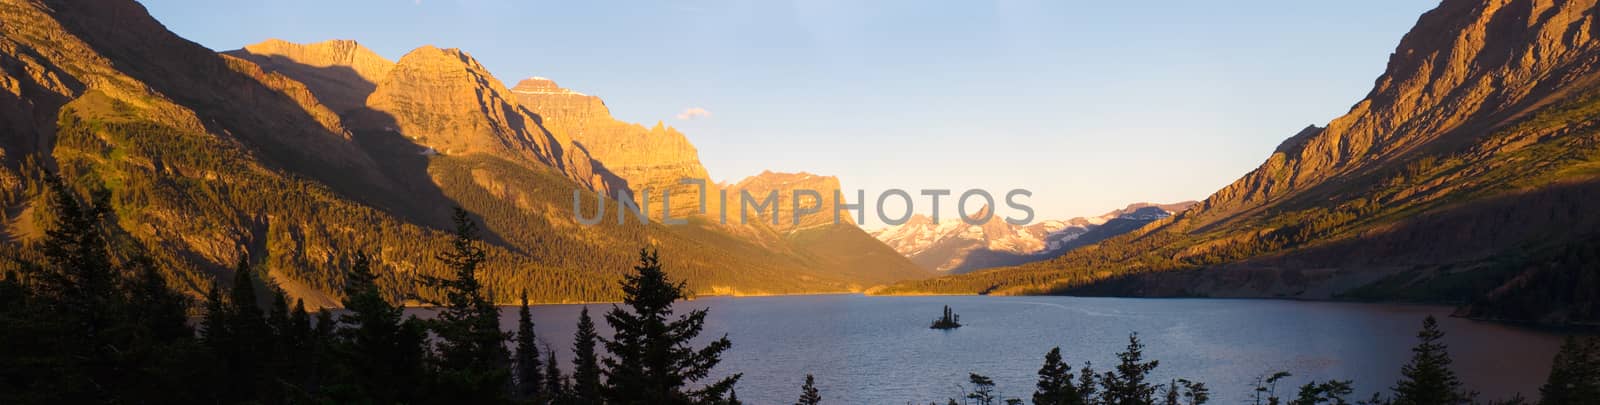 Lake in Glacier National Park by benkrut